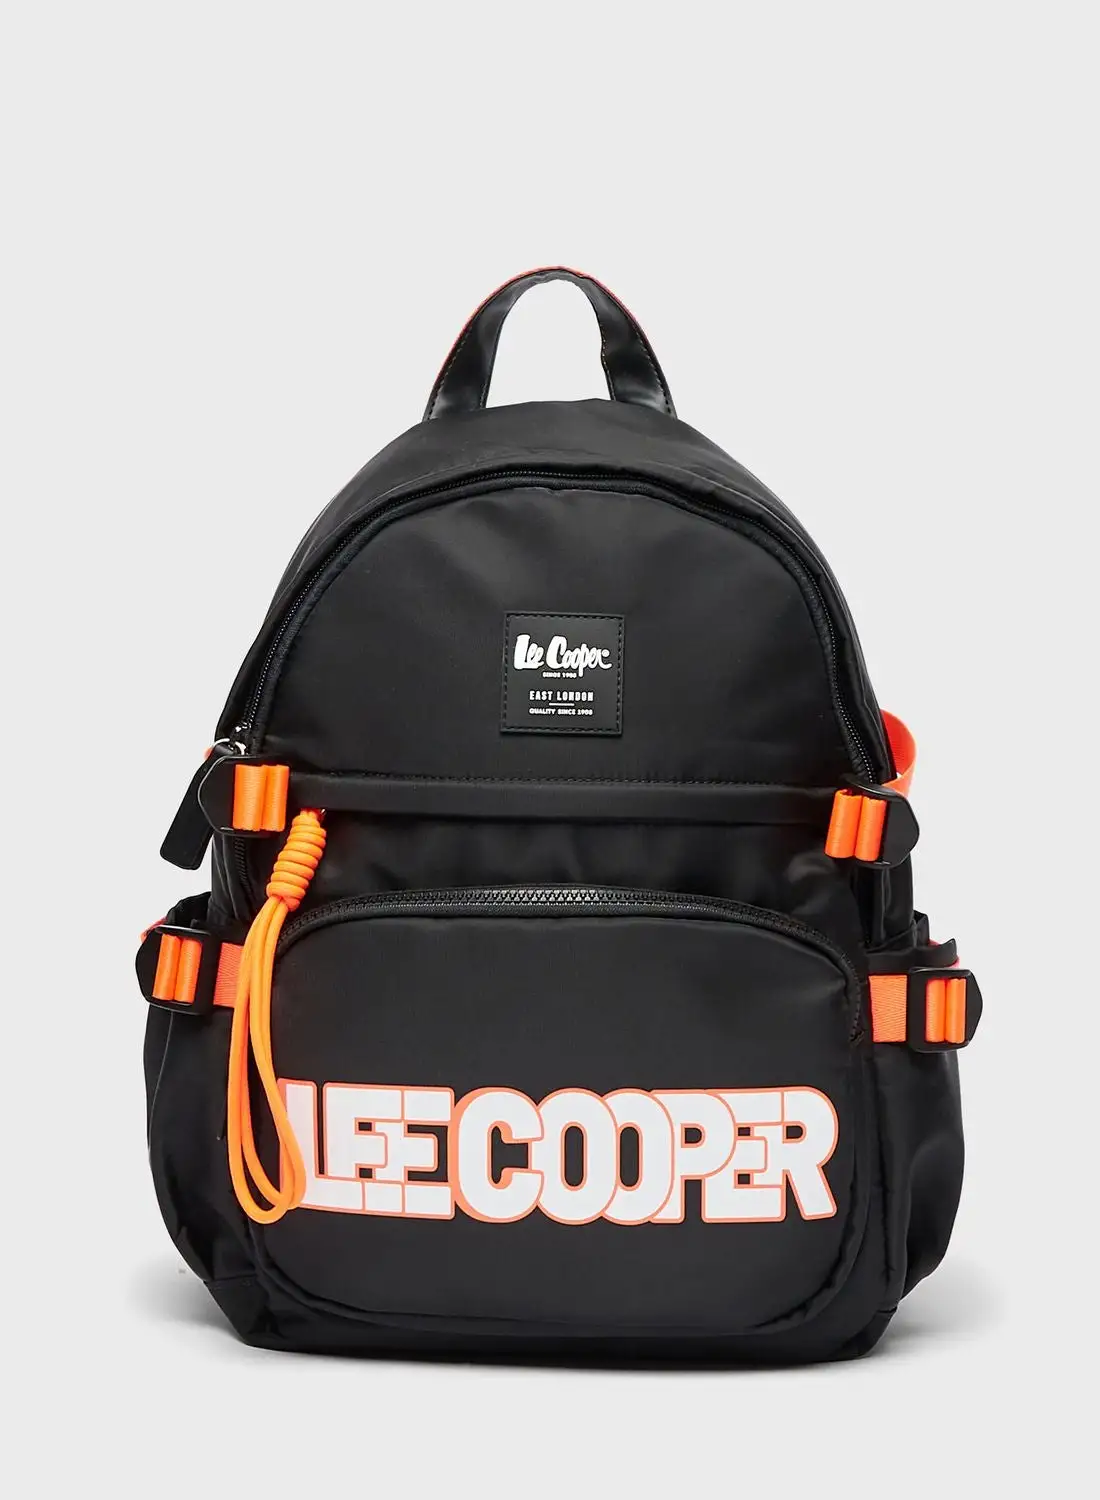 Lee Cooper Logo Detail Backpack